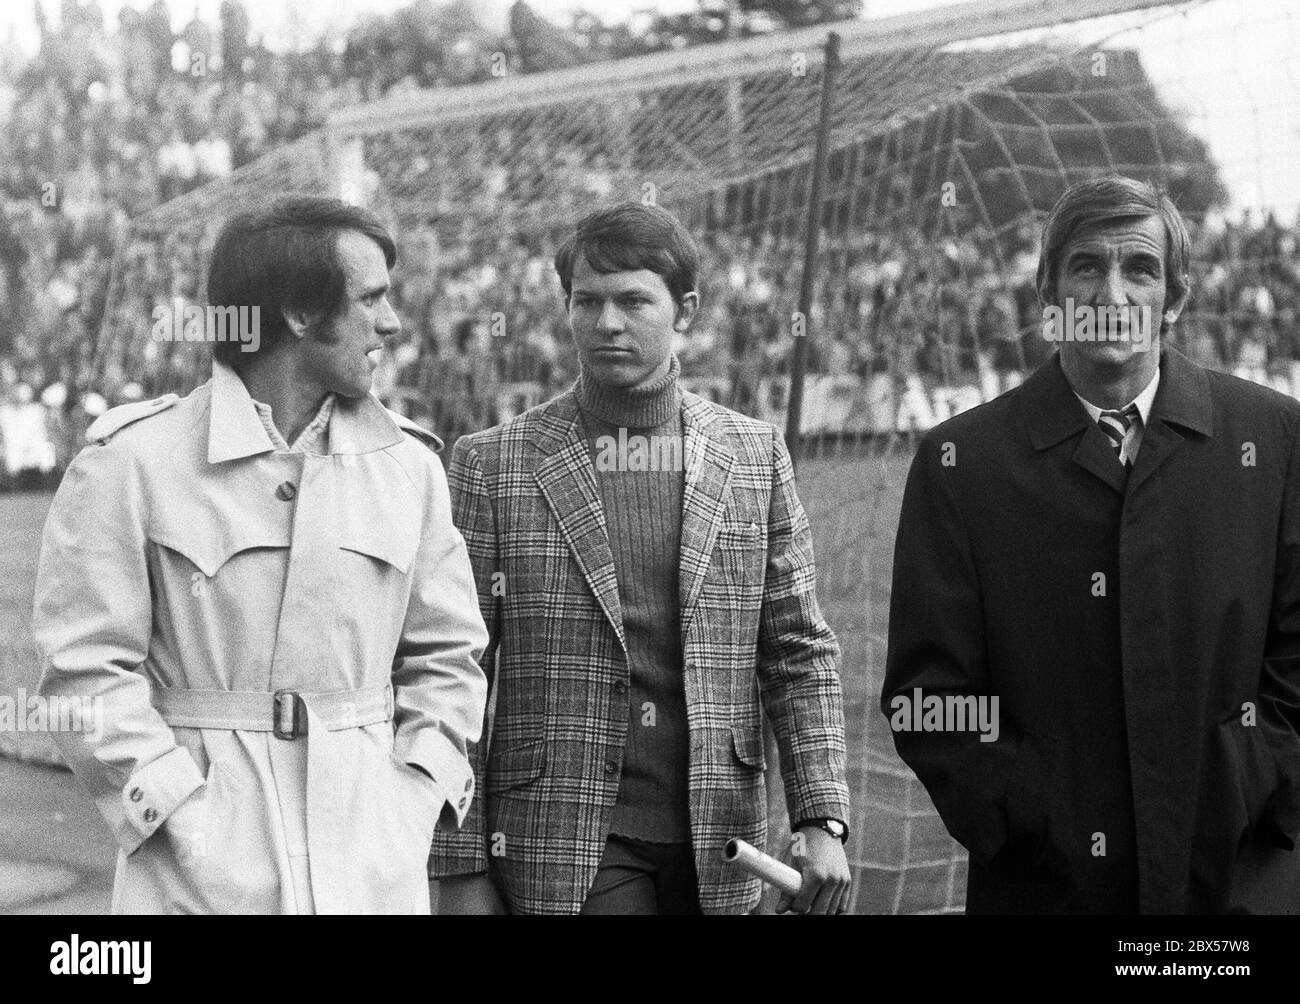 Wolfgang Overath e Hannes Loehr in abiti civili mentre si ha una conversazione, Bundesliga, stagione 1970/1971, Borussia Moenchengladbach contro 1. FC Koeln 1: 1, Stadion am Boekelberg. Foto Stock